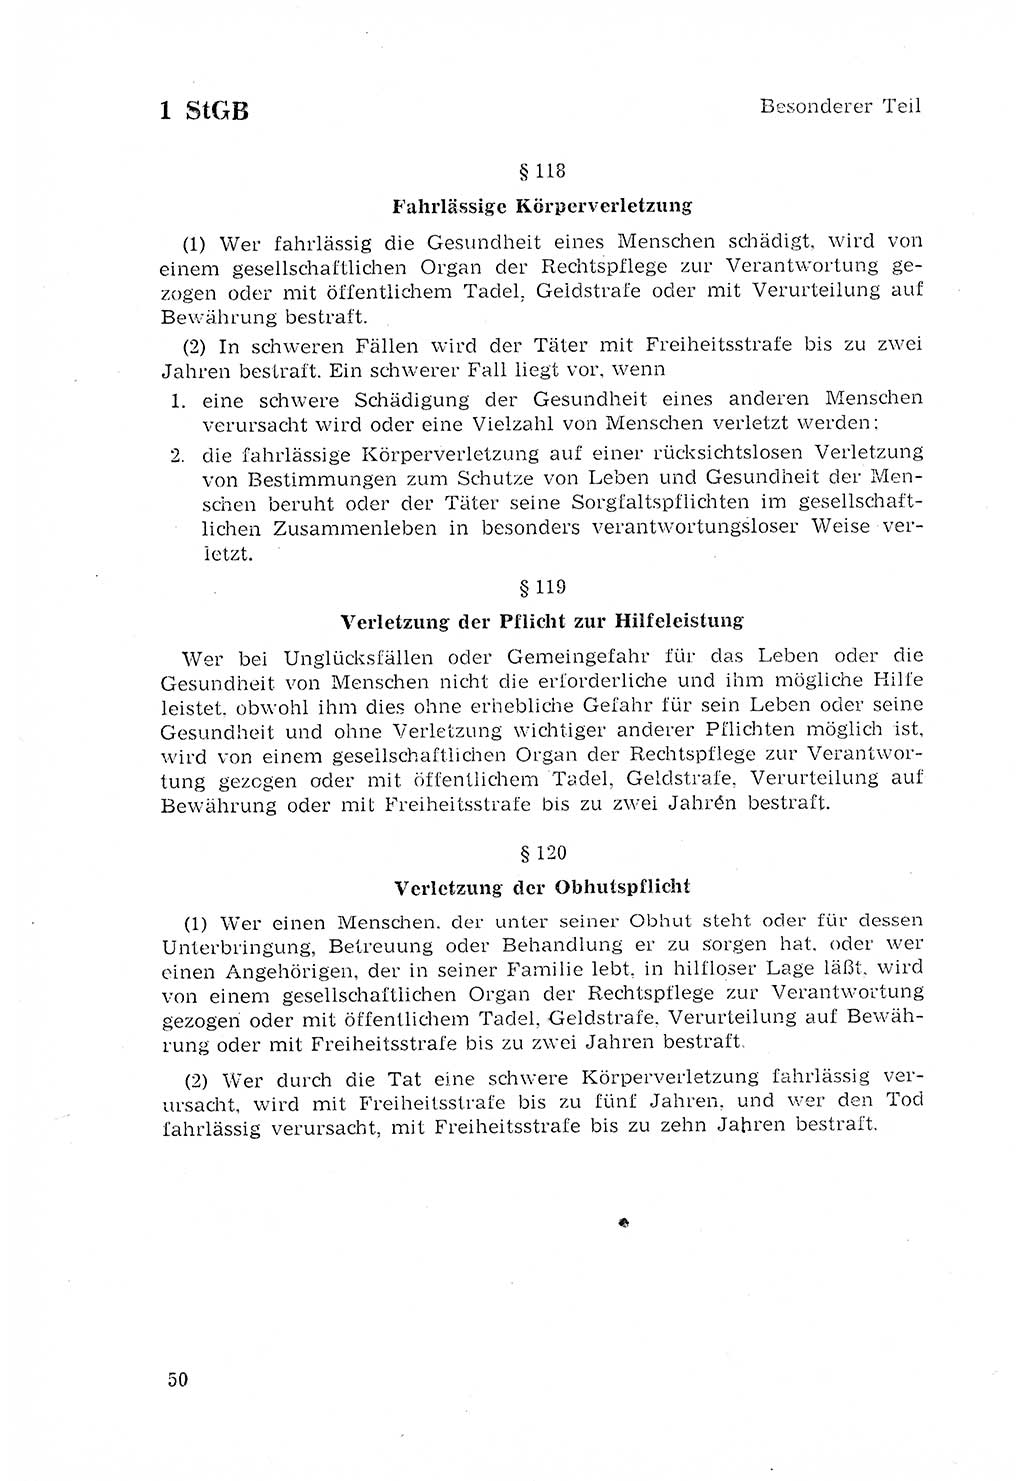 Strafgesetzbuch (StGB) der Deutschen Demokratischen Republik (DDR) 1968, Seite 50 (StGB DDR 1968, S. 50)